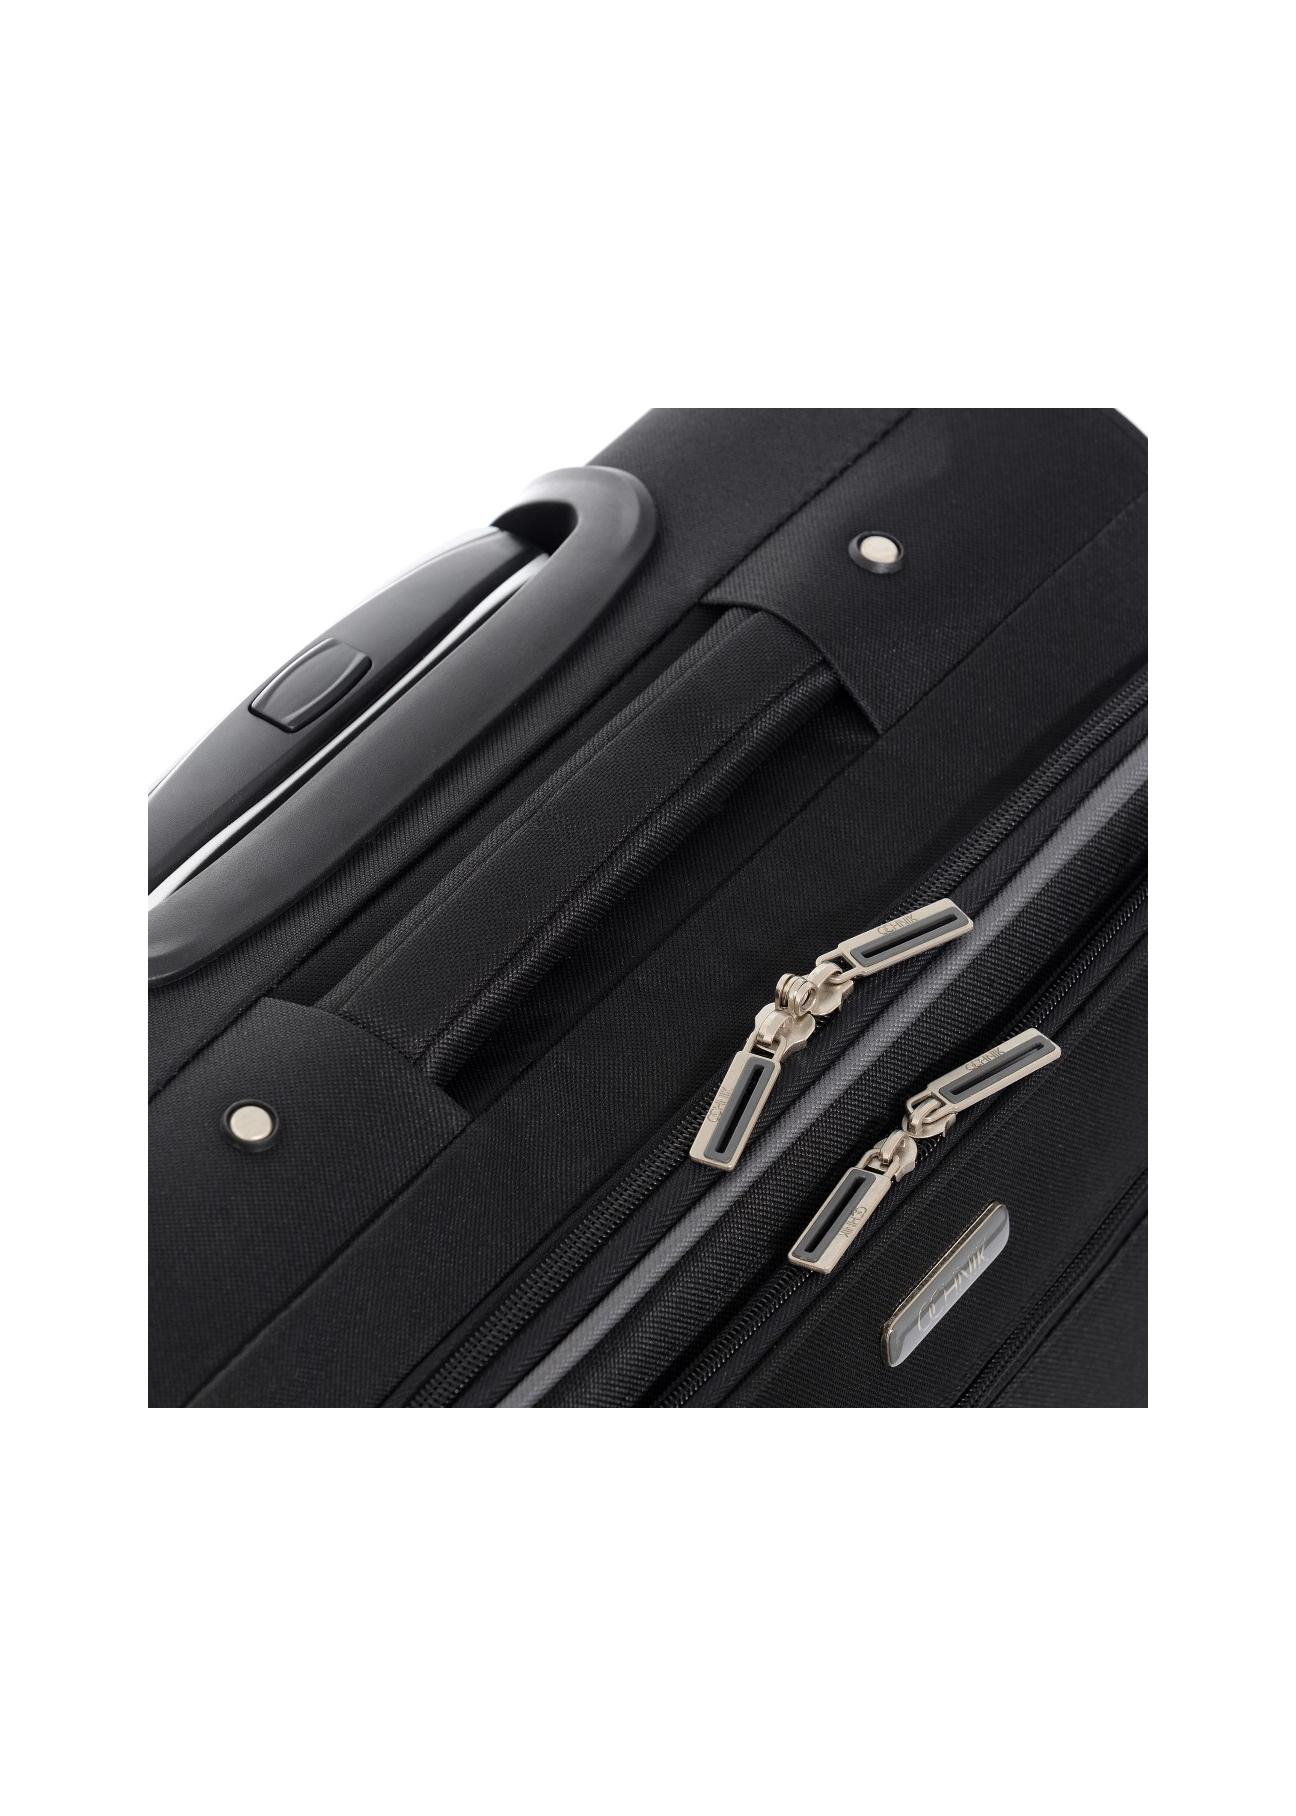 Średnia walizka na kółkach WALNY-0019-99-24(W17)